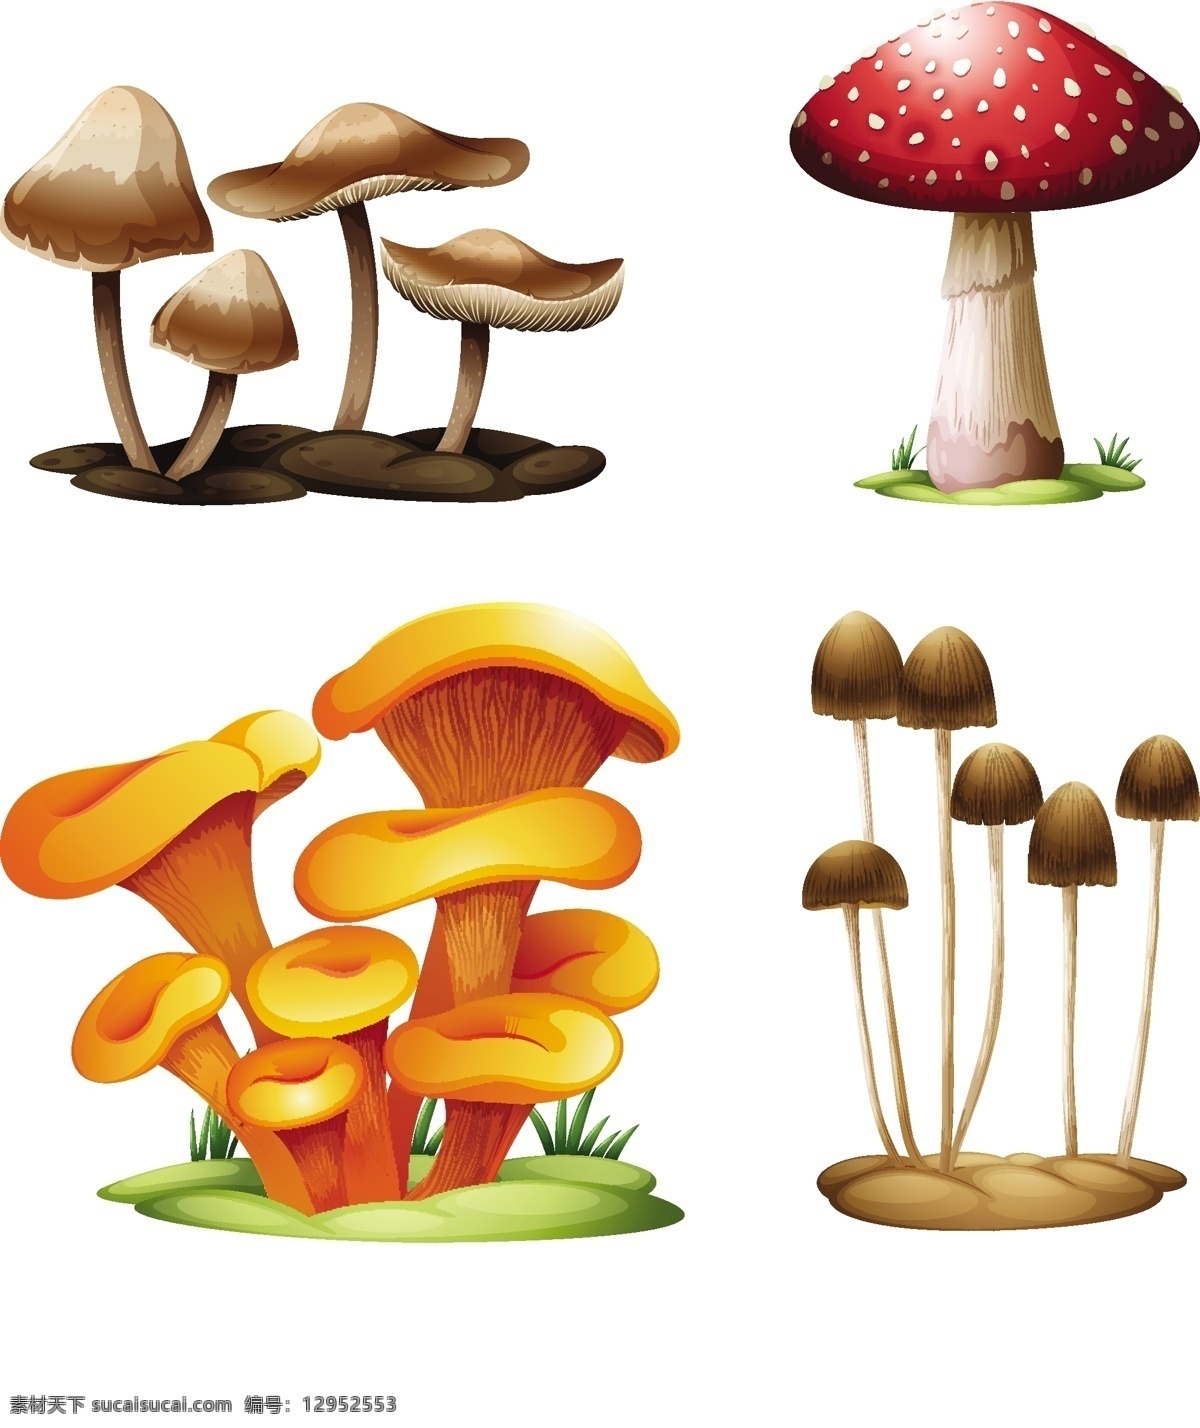 卡通 蘑菇 矢量 绘画 蔬菜水果 生物世界 蘑菇设计 矢量蘑菇 蘑菇素材 食物蔬菜